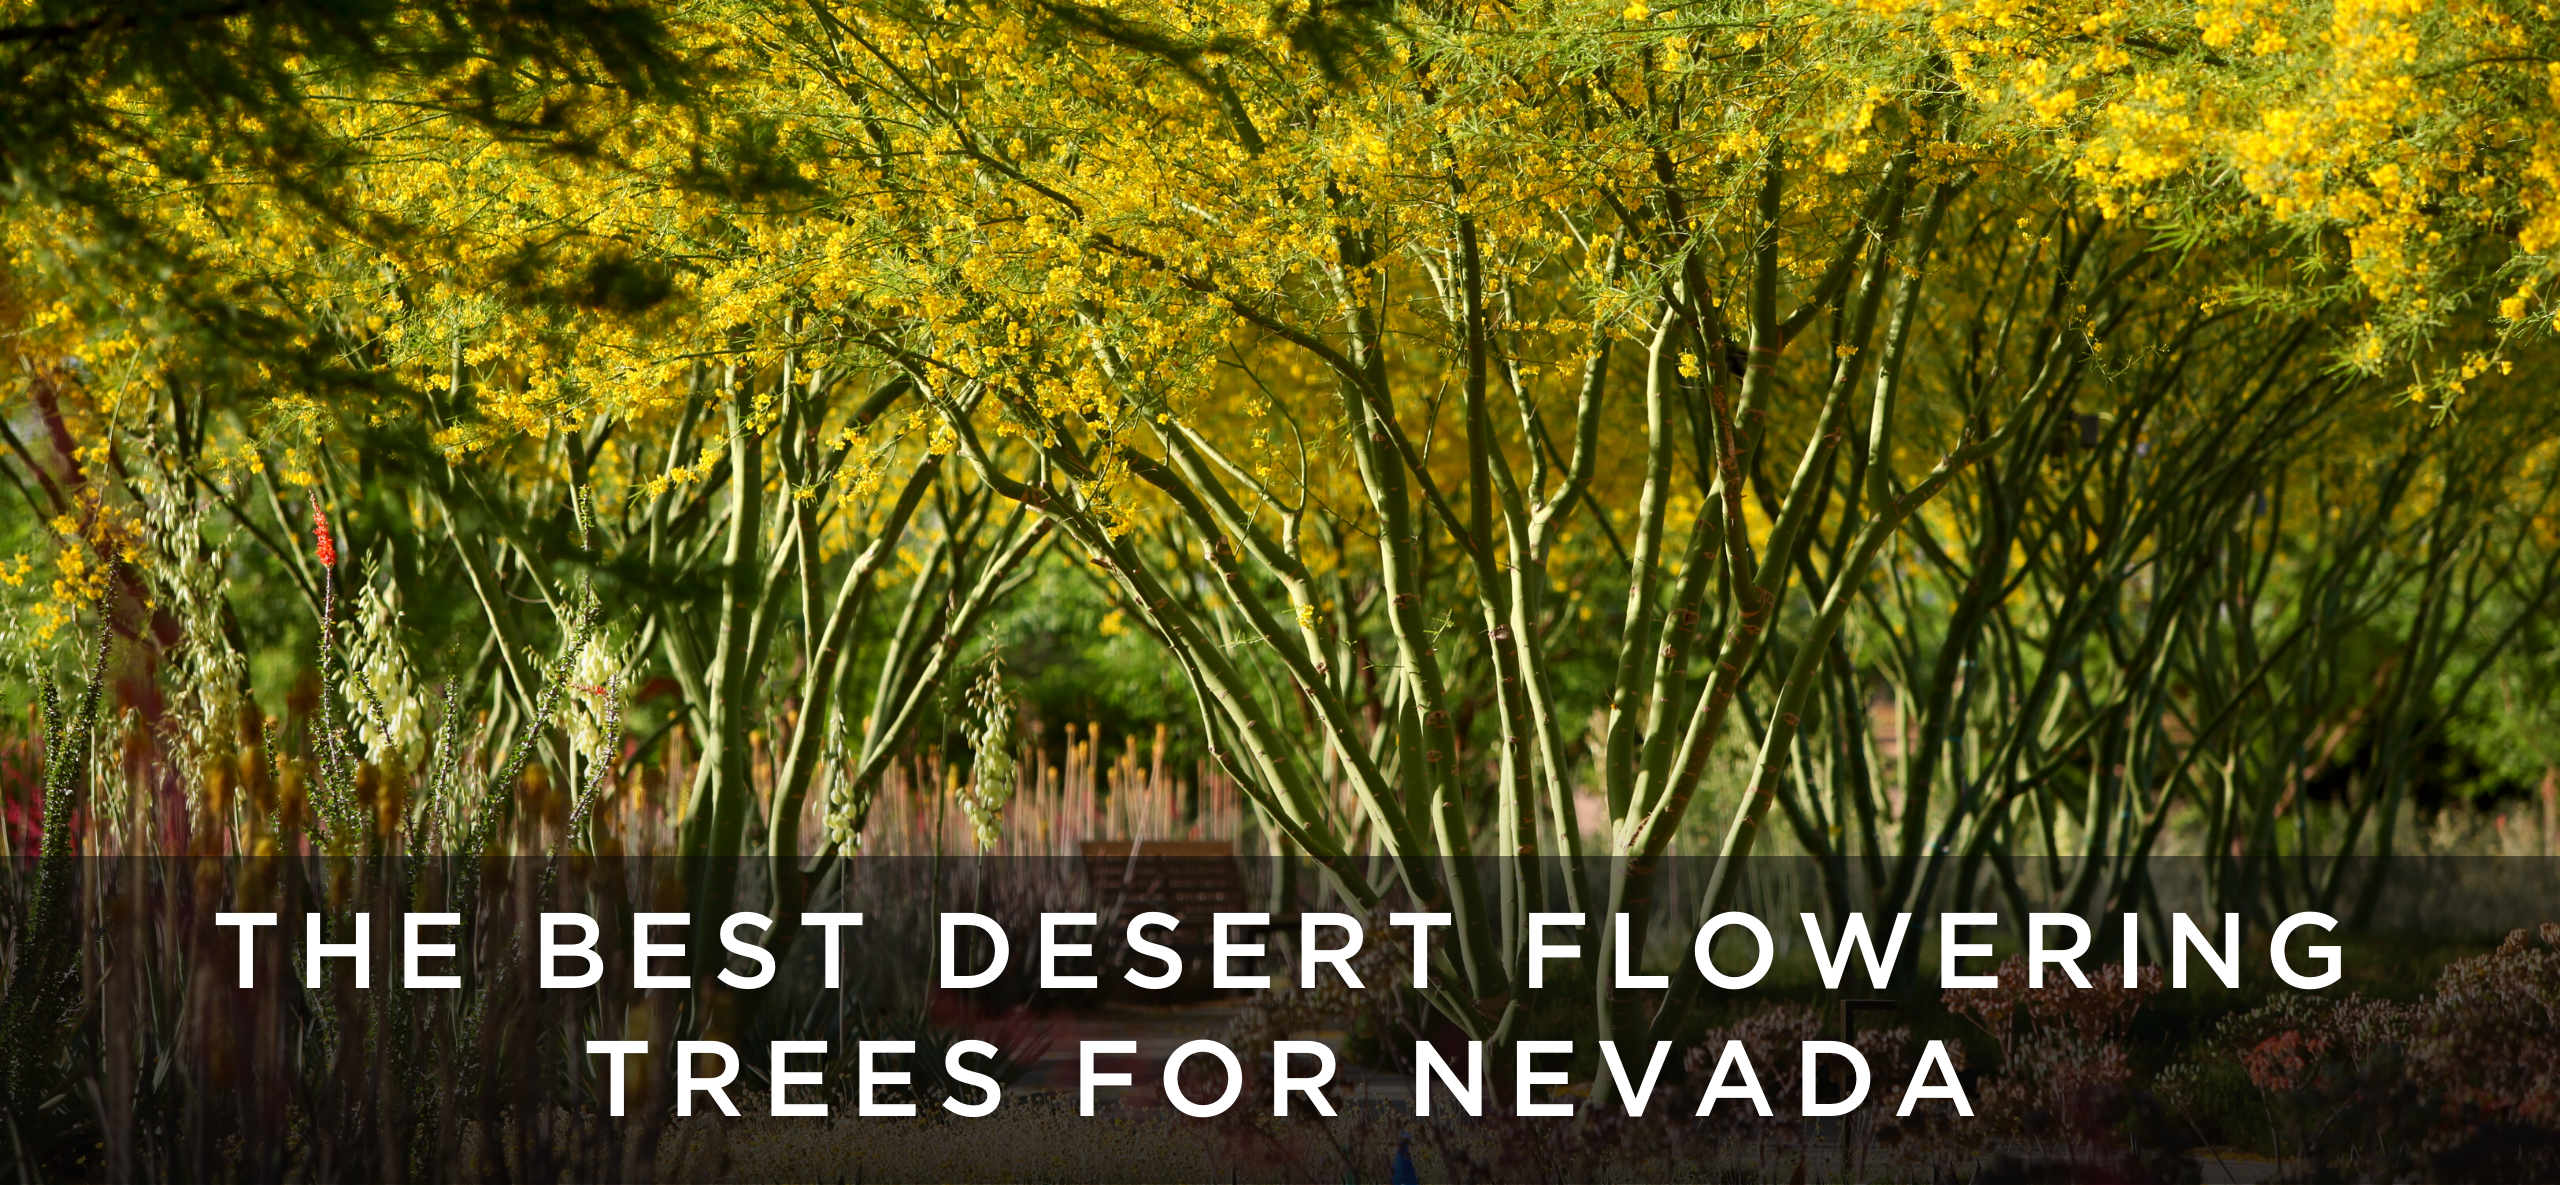 Flowering trees for nevada las vegas desert